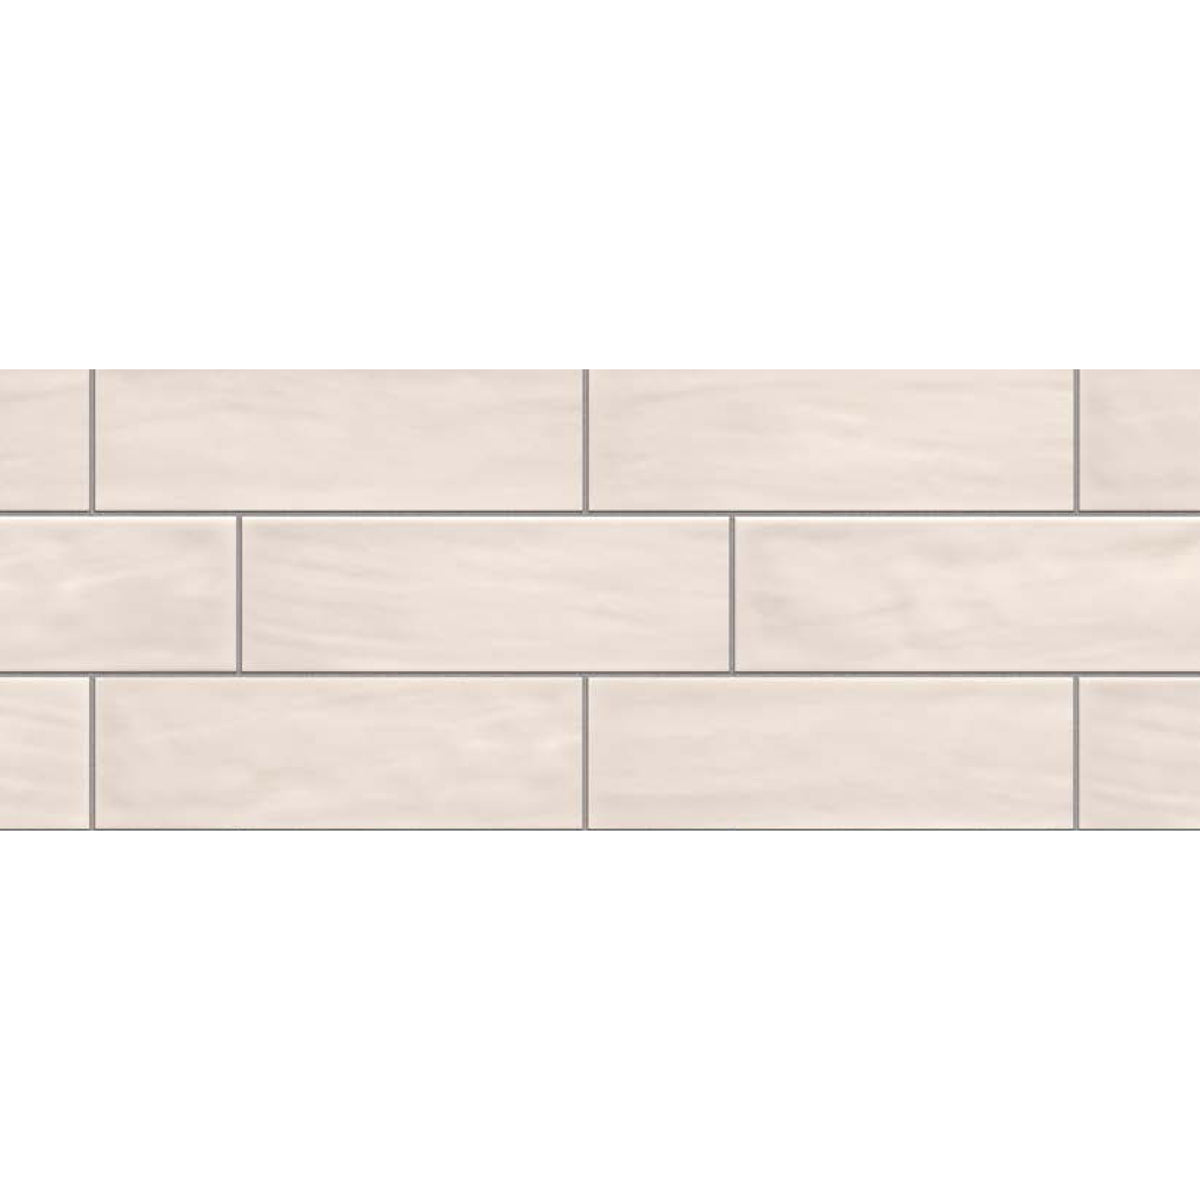 Topcu - Borriana - 3 in. x 12 in. Ceramic Wall Tile - White Variation